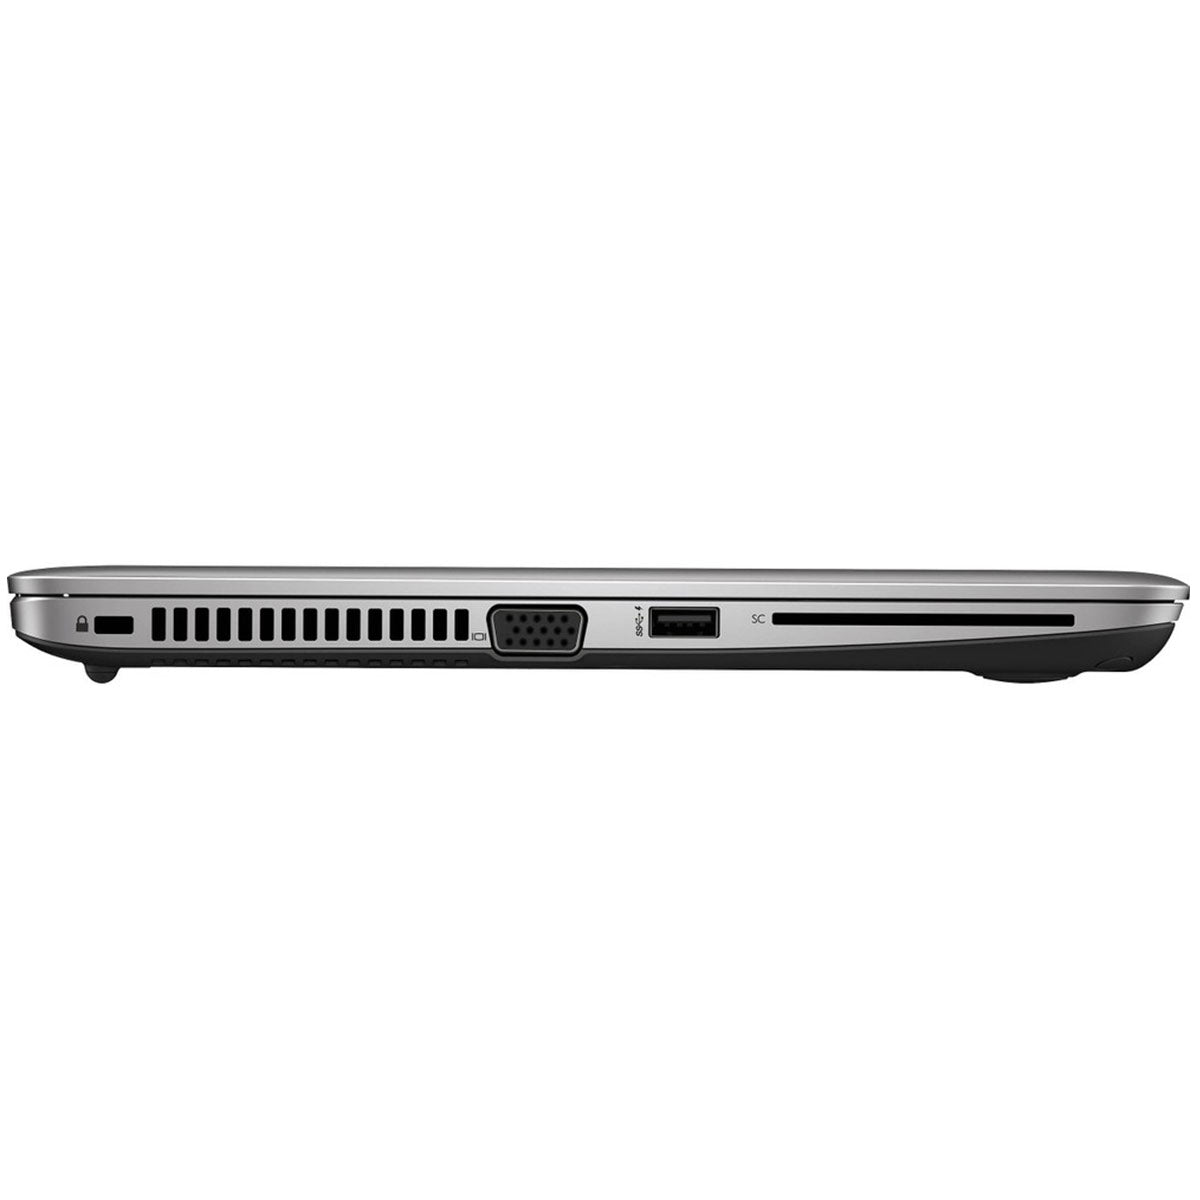 HP EliteBook 820 G3 Intel Core i5 6th Gen 8GB RAM 256GB SSD 12.5 Inches FHD